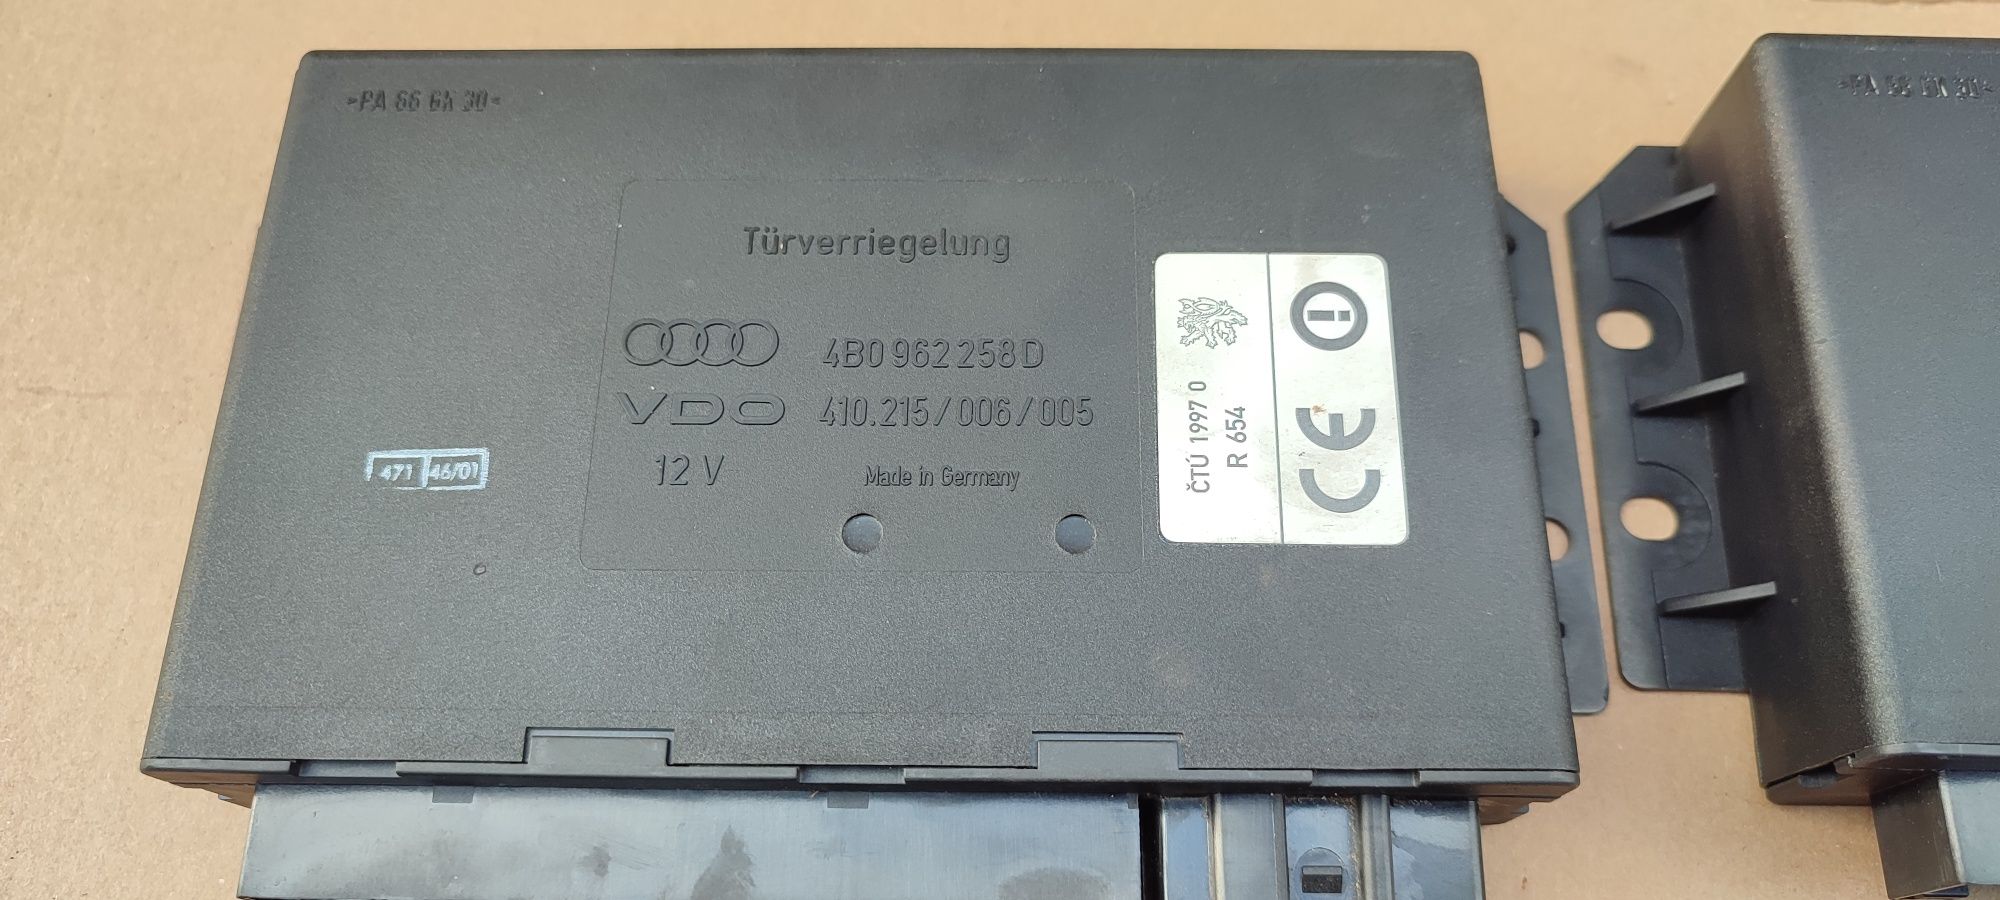 Audi A6 C5 lift moduł komfortu sterownik 4B0962.258D i L